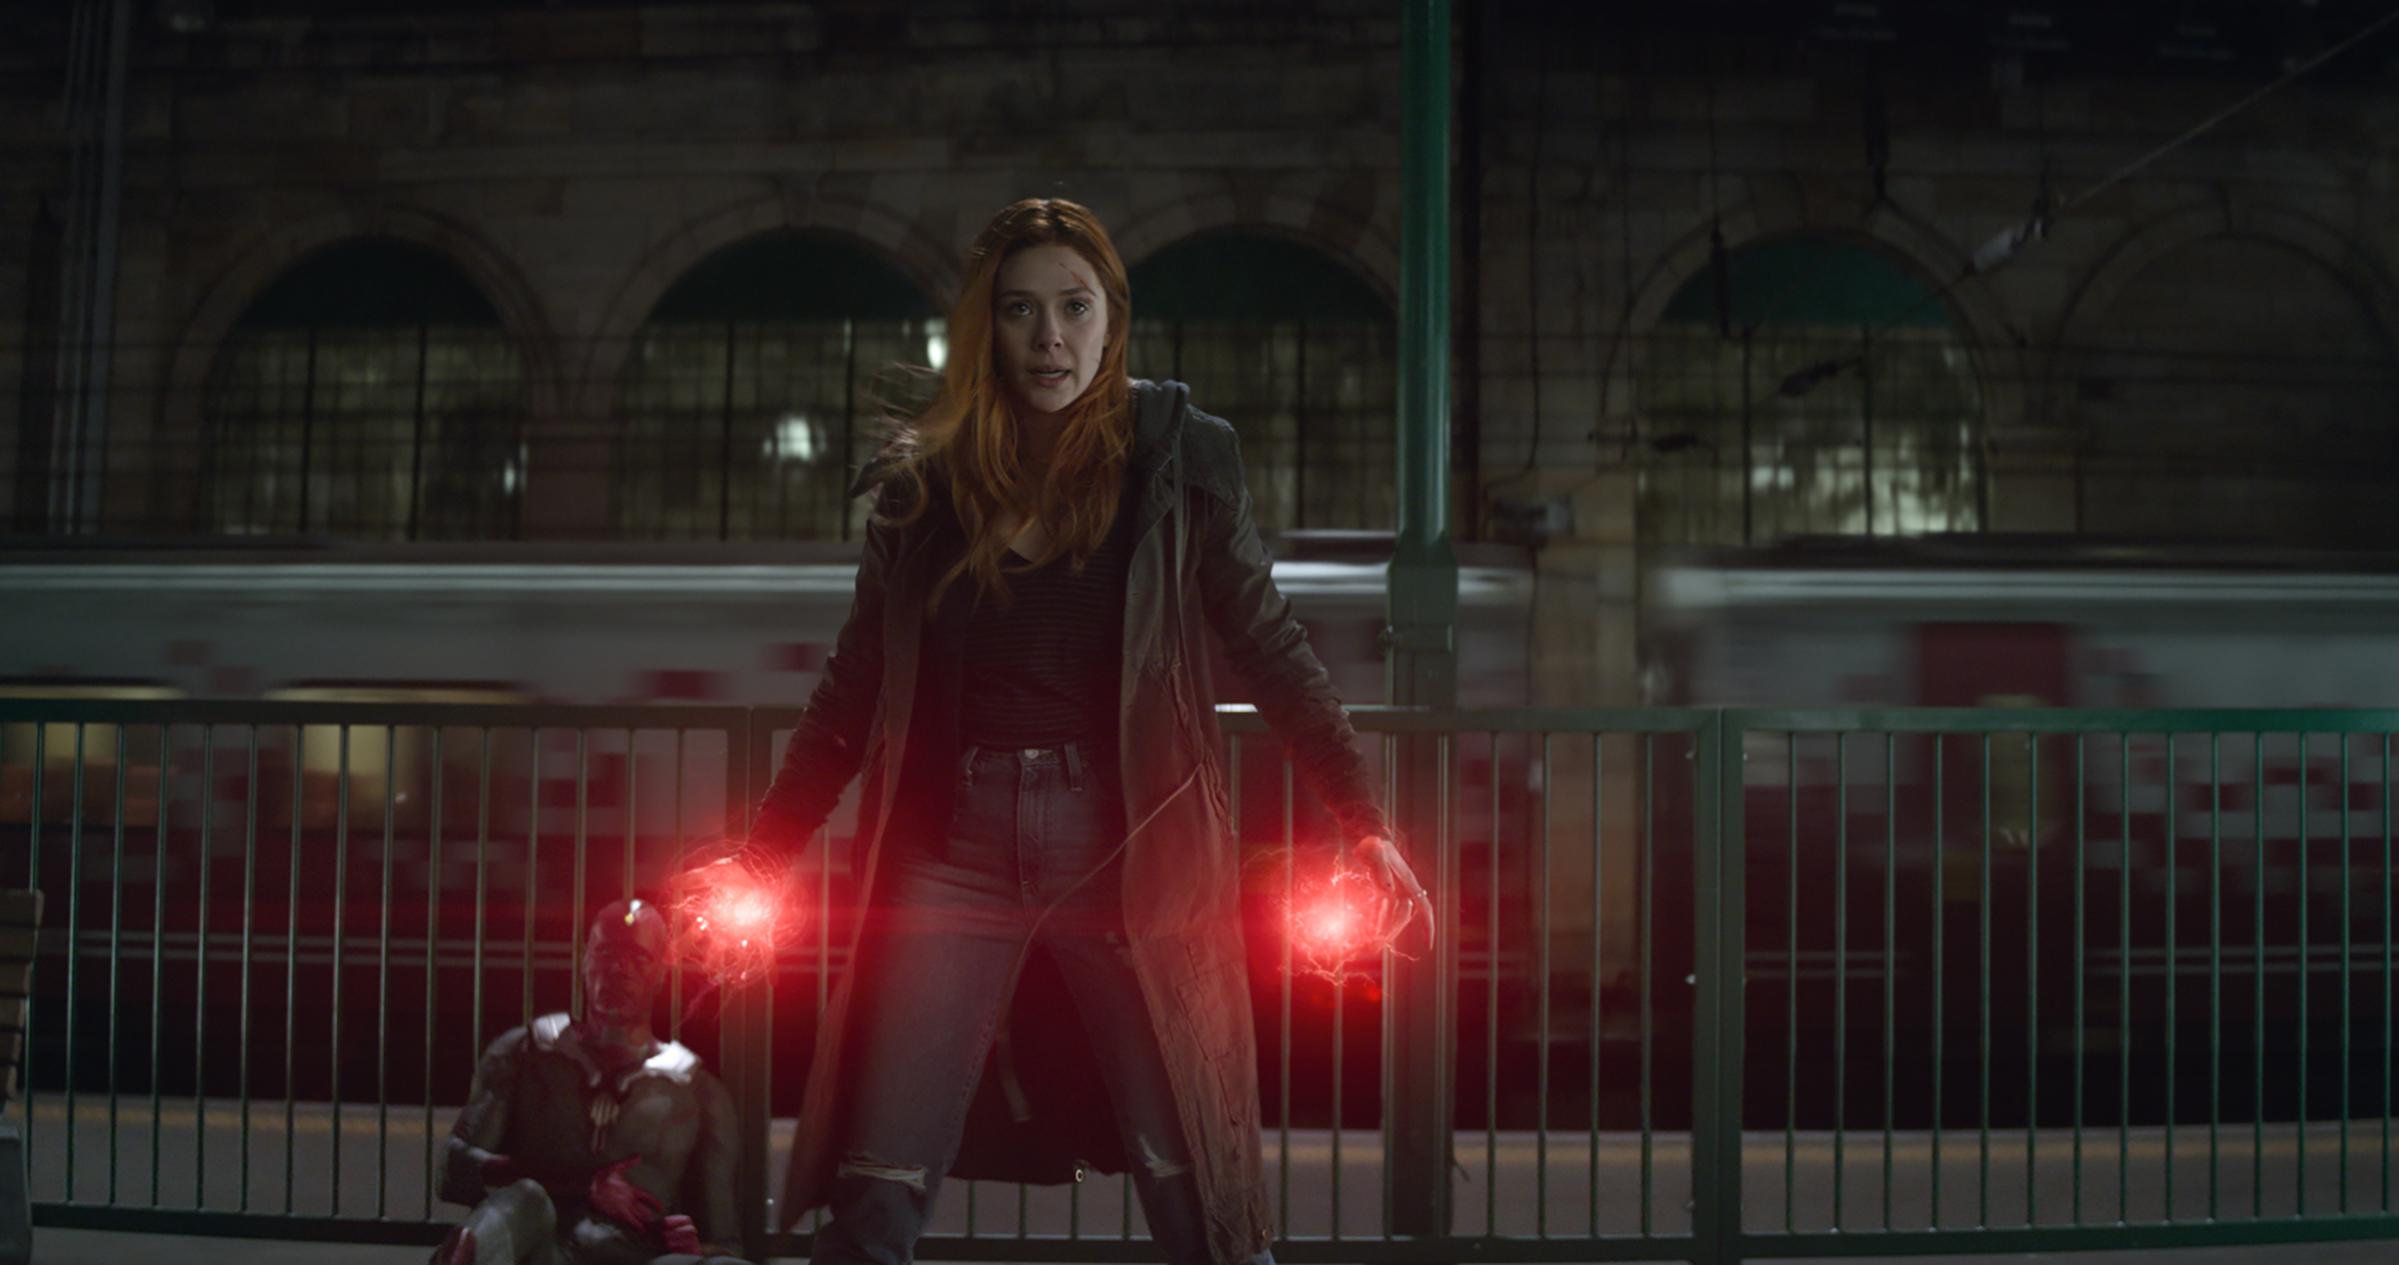 Elizabeth Olsen as Scarlet Witch in "Avengers: Infinity War"